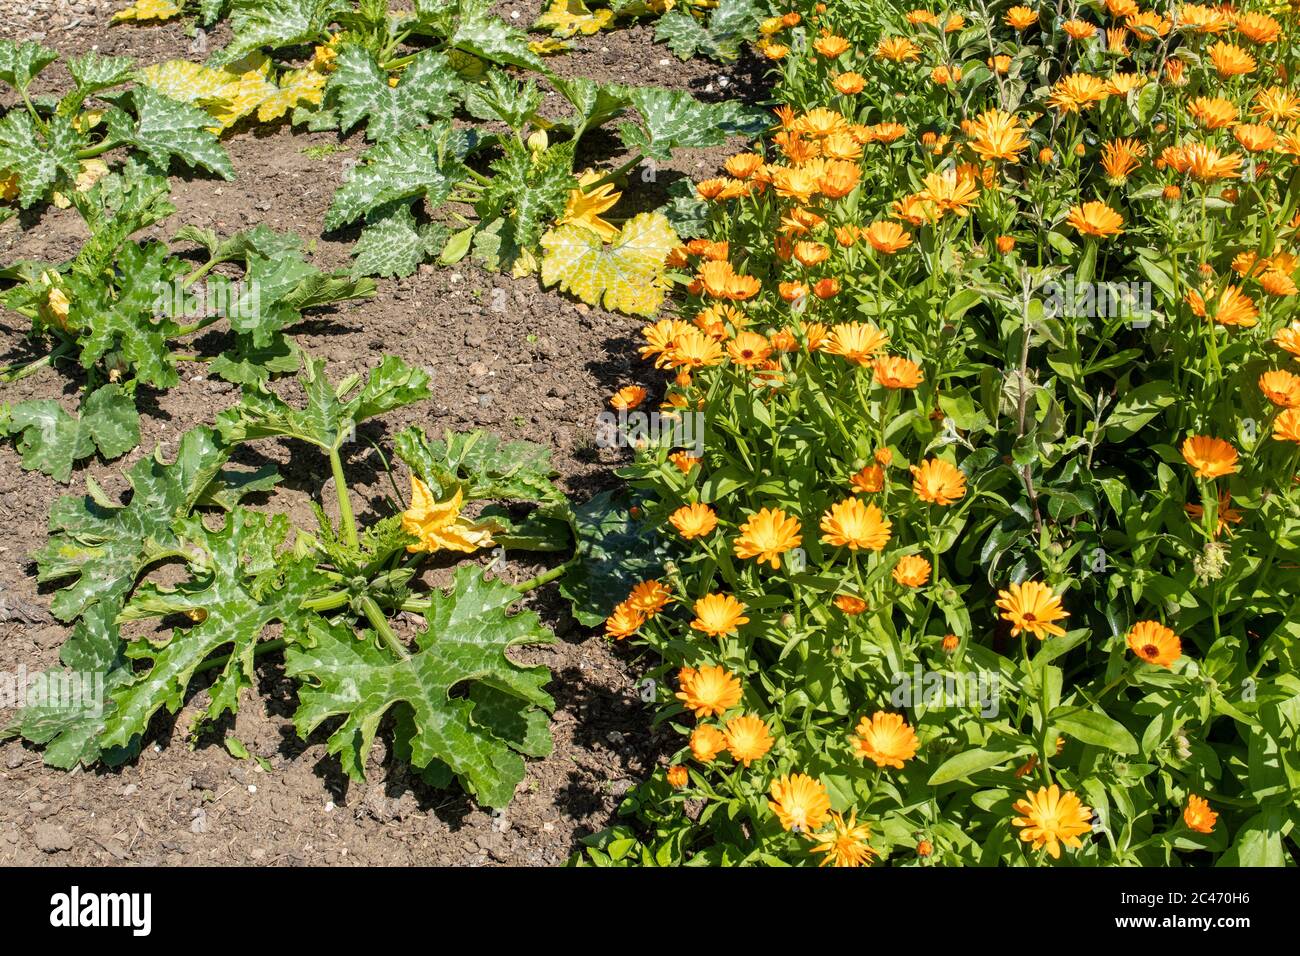 Compagno di piantare in un orto organico per prevenire i parassiti, marigolds piantati accanto a zucchine piante, Regno Unito, estate Foto Stock